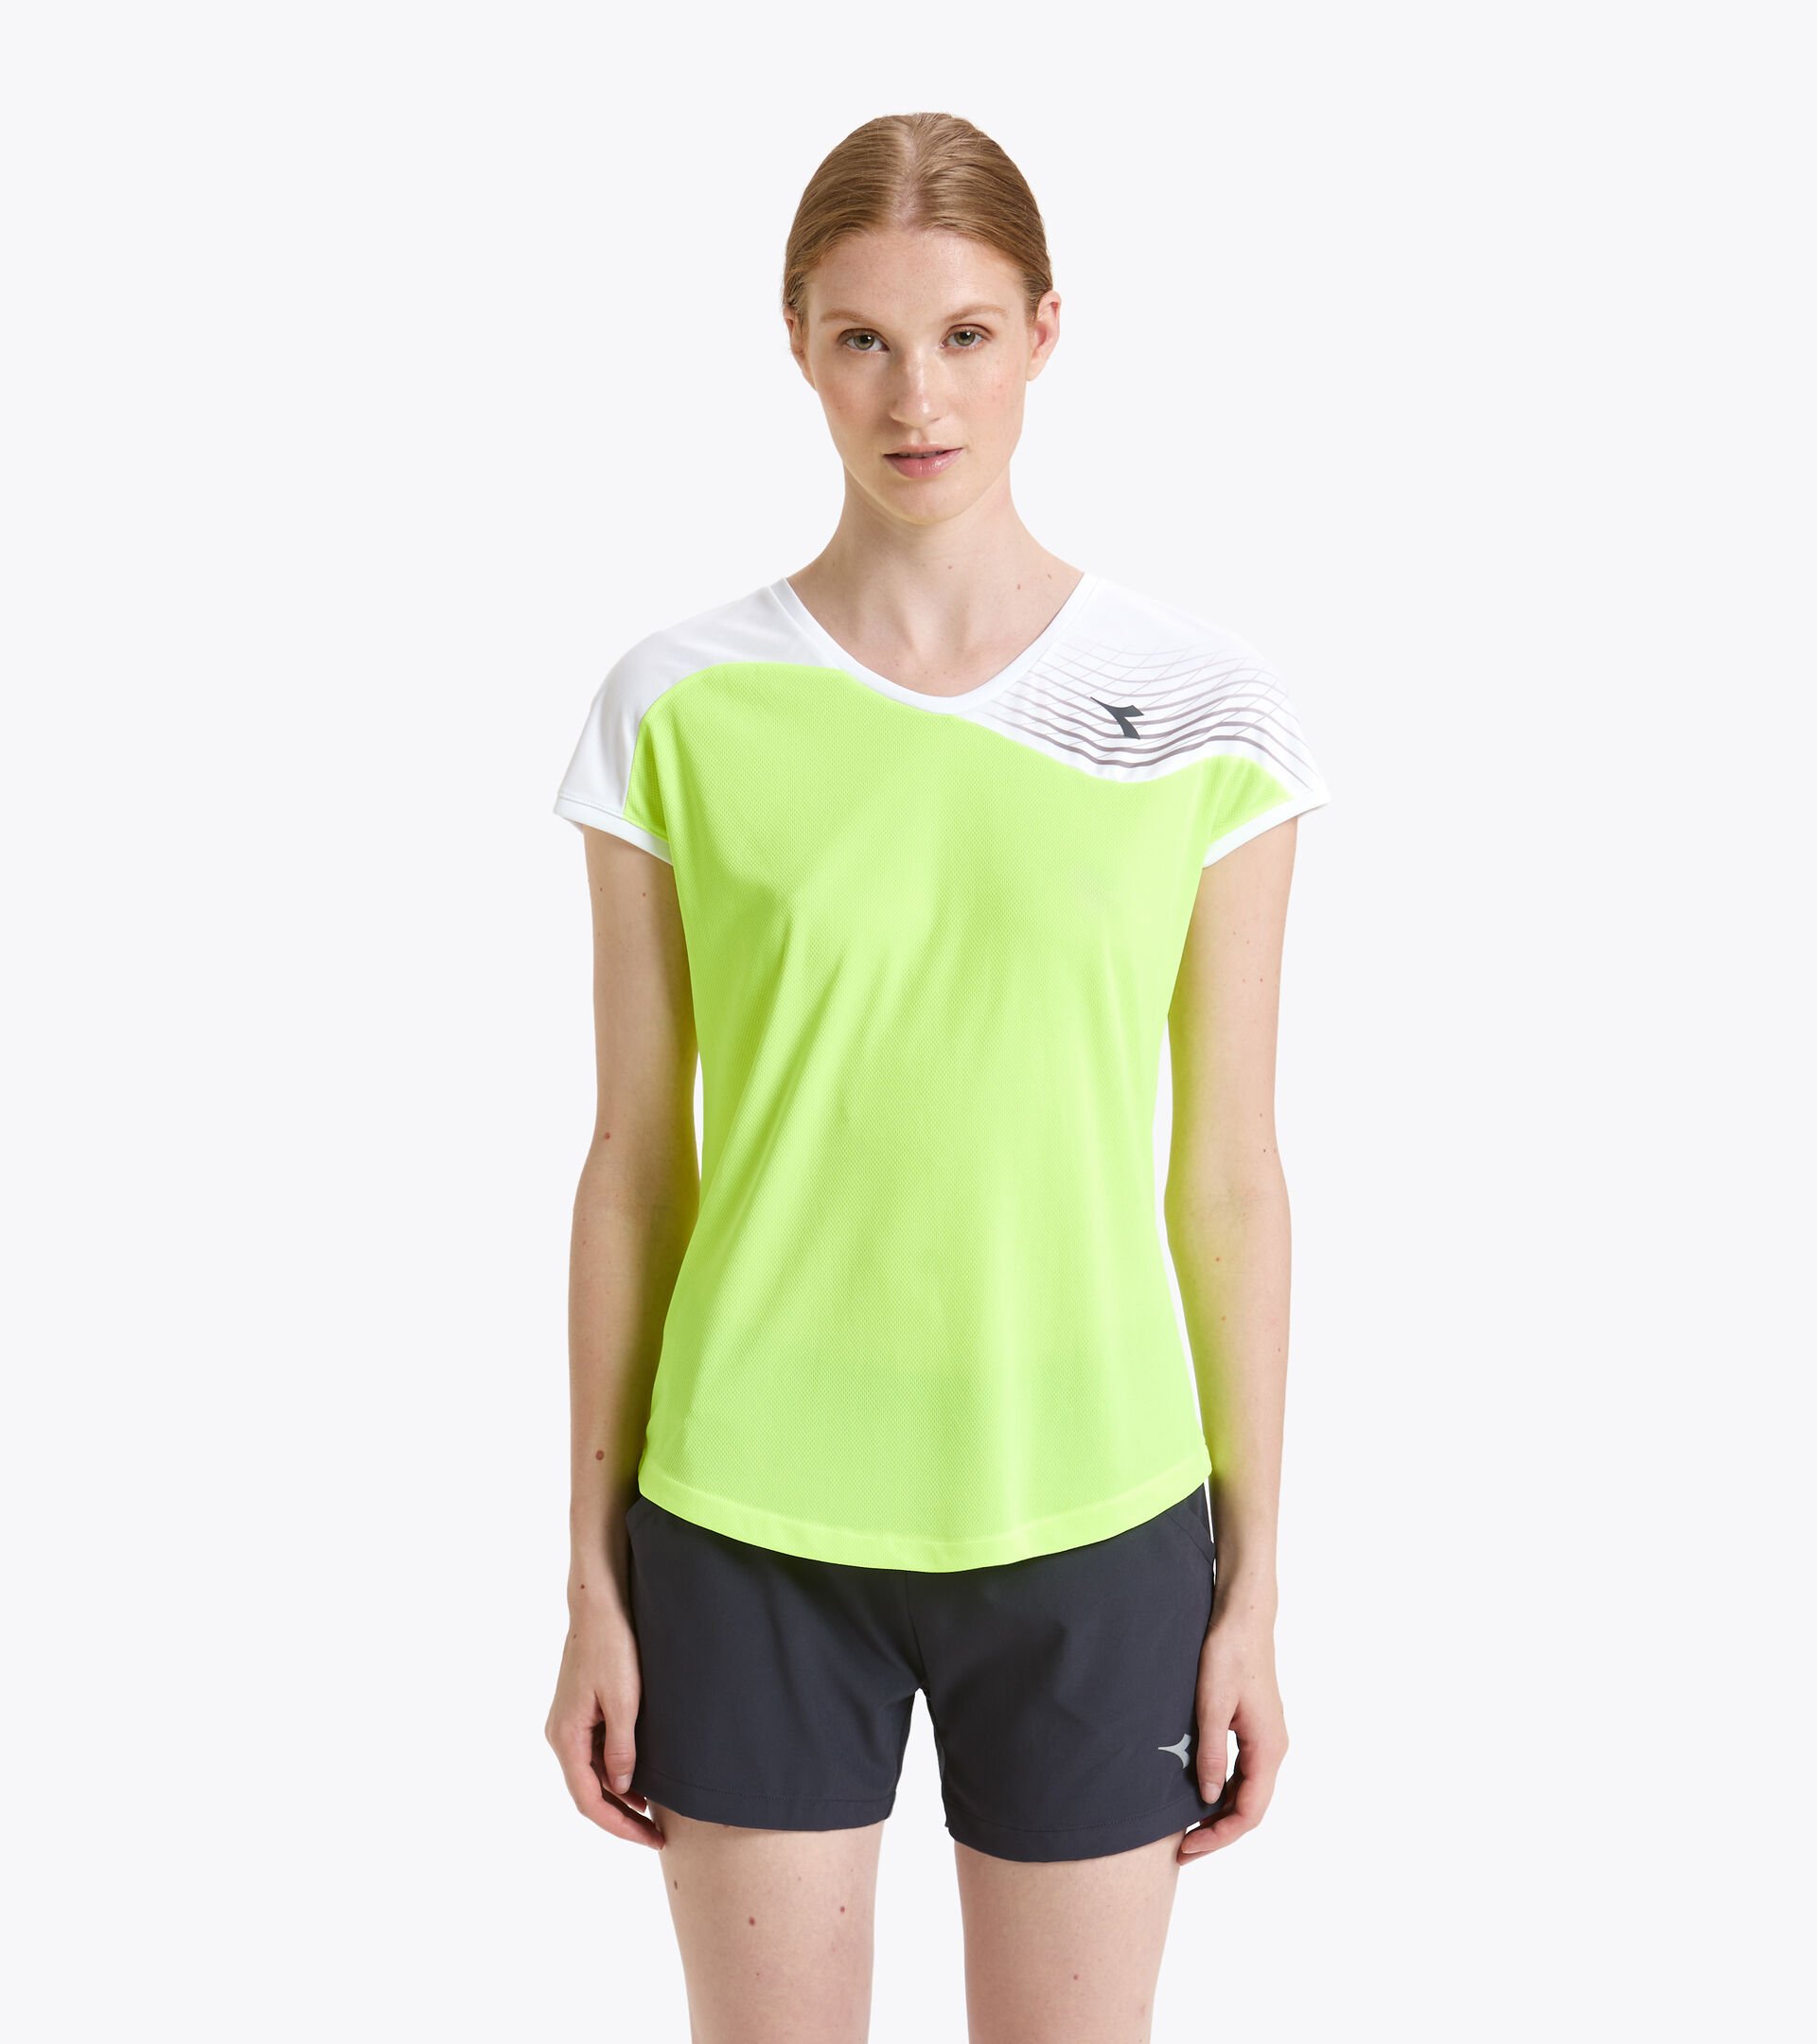 Tennis T-shirt - Women L. T-SHIRT COURT FLUO YELLOW DD - Diadora